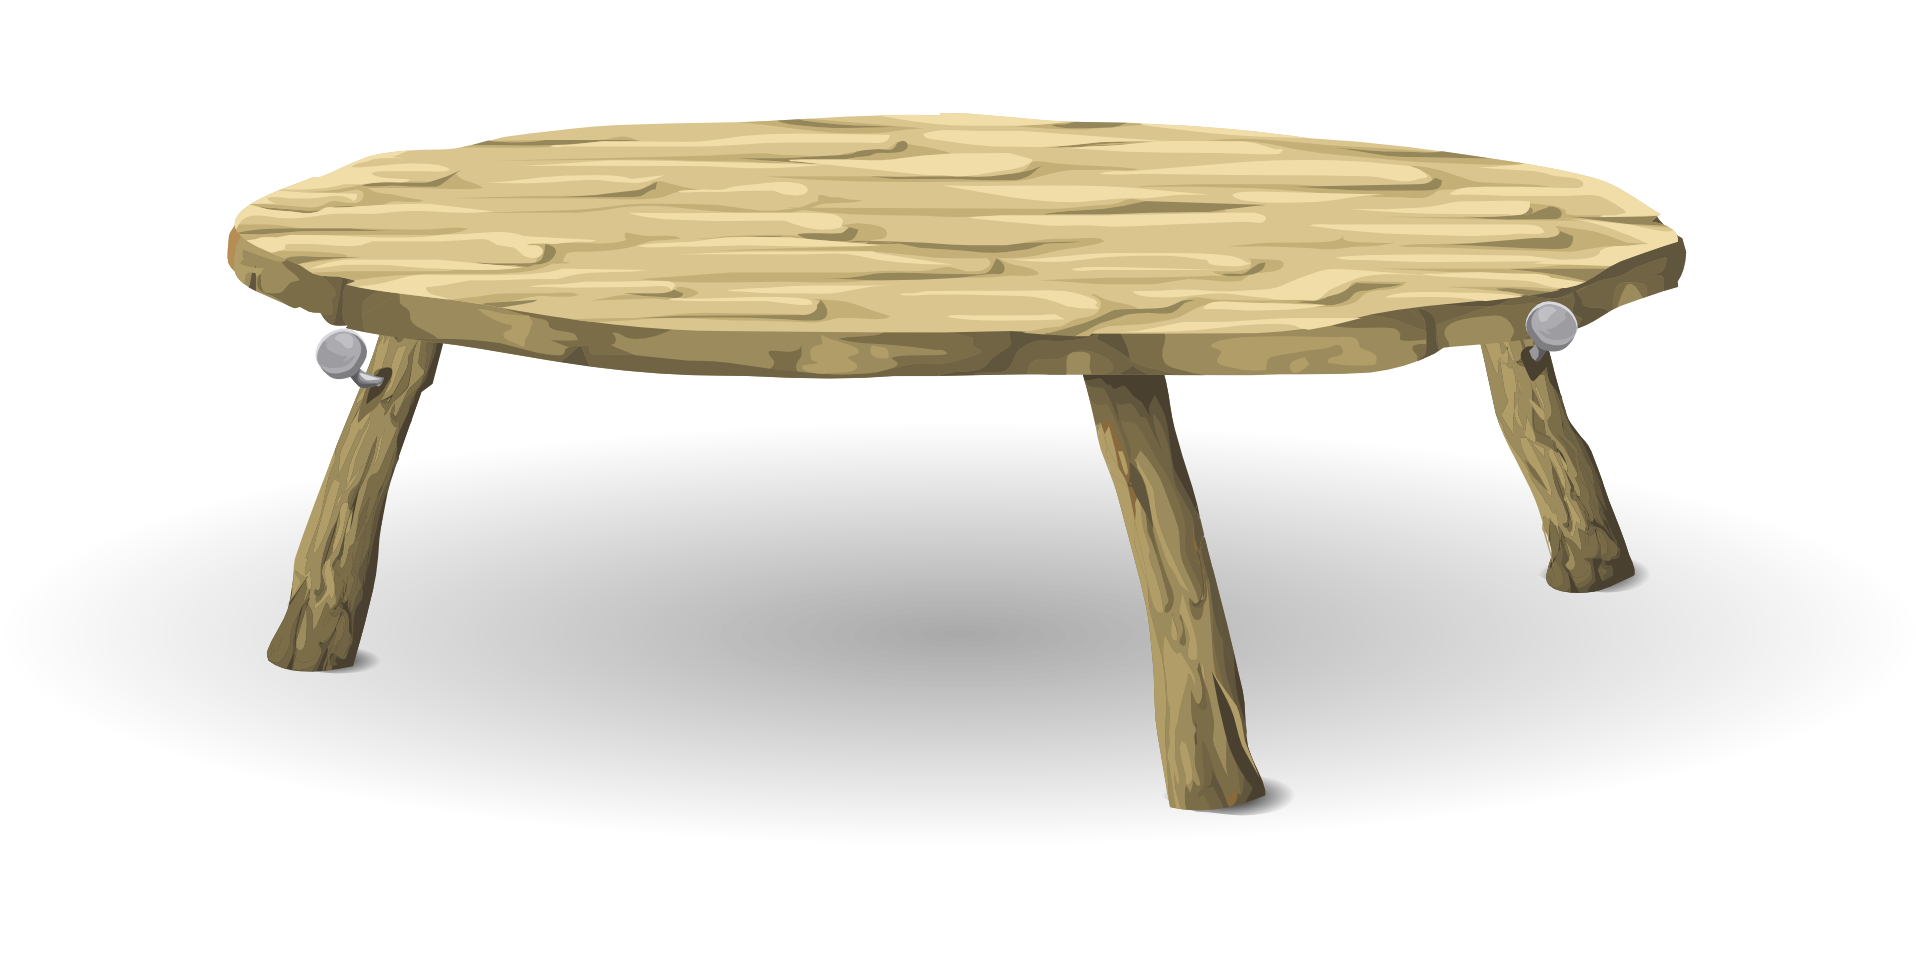    Где можно купить деревянный столик для теста в Анталии  